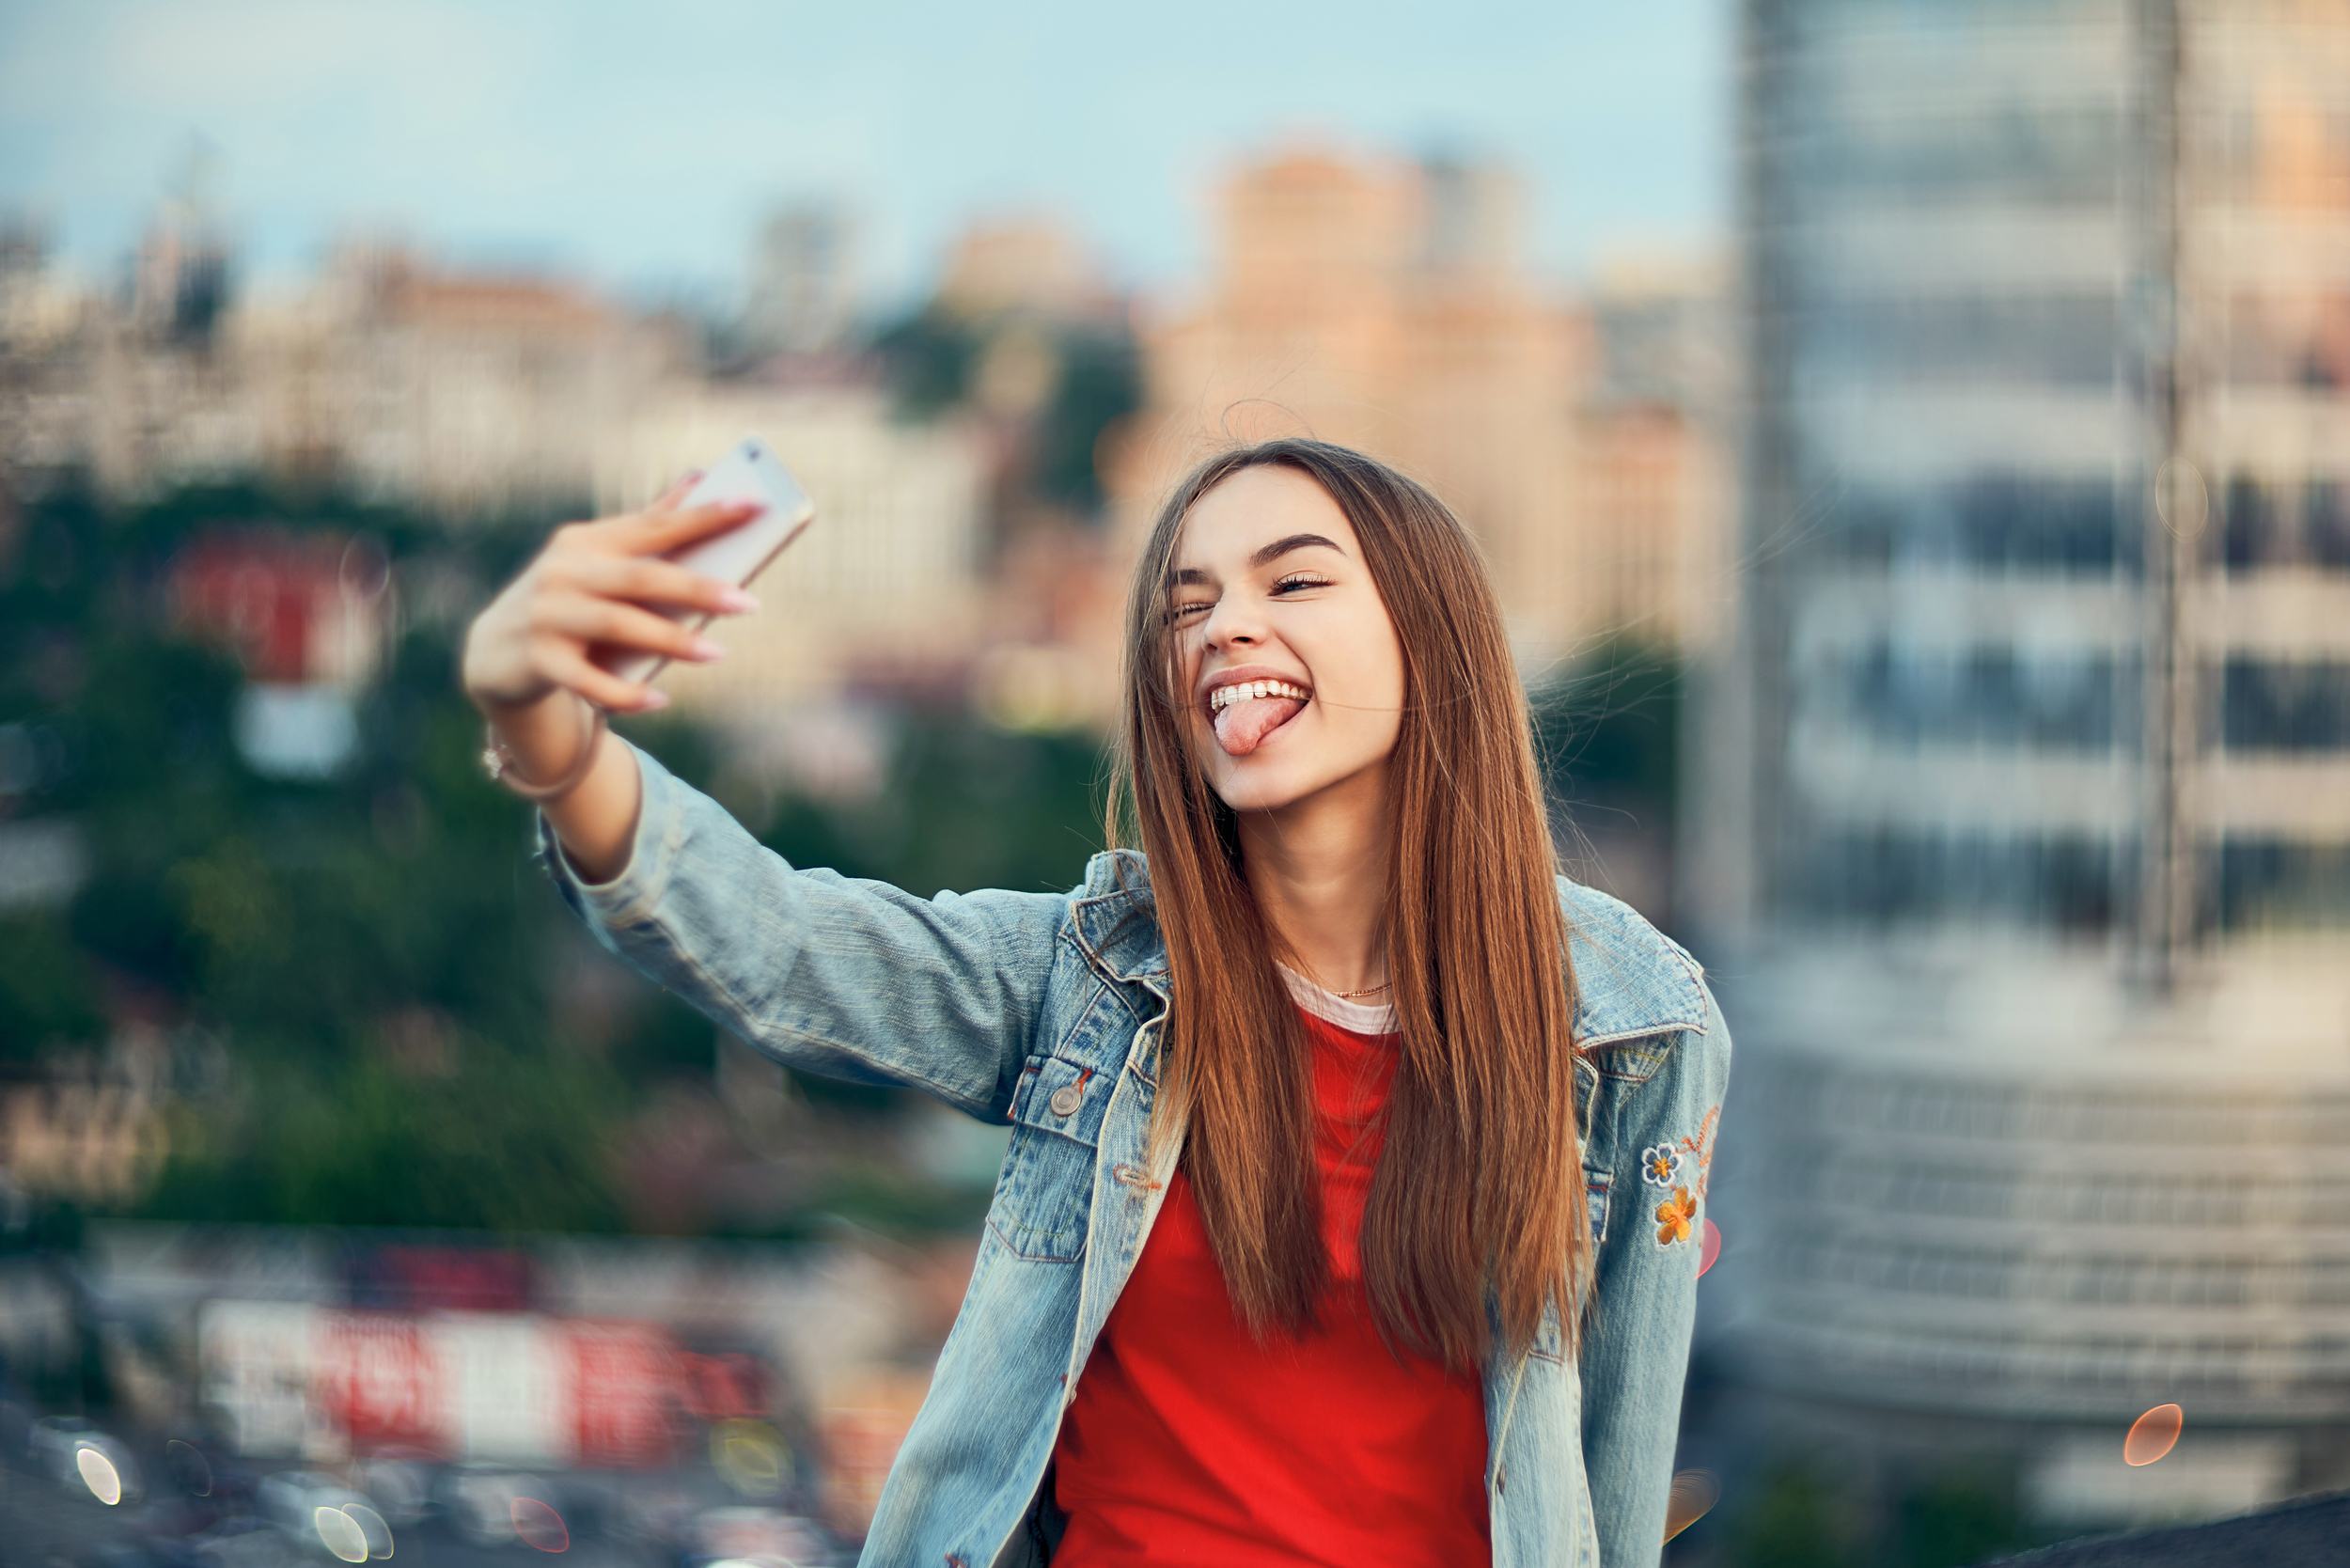 Encourage your teen to take travel photos